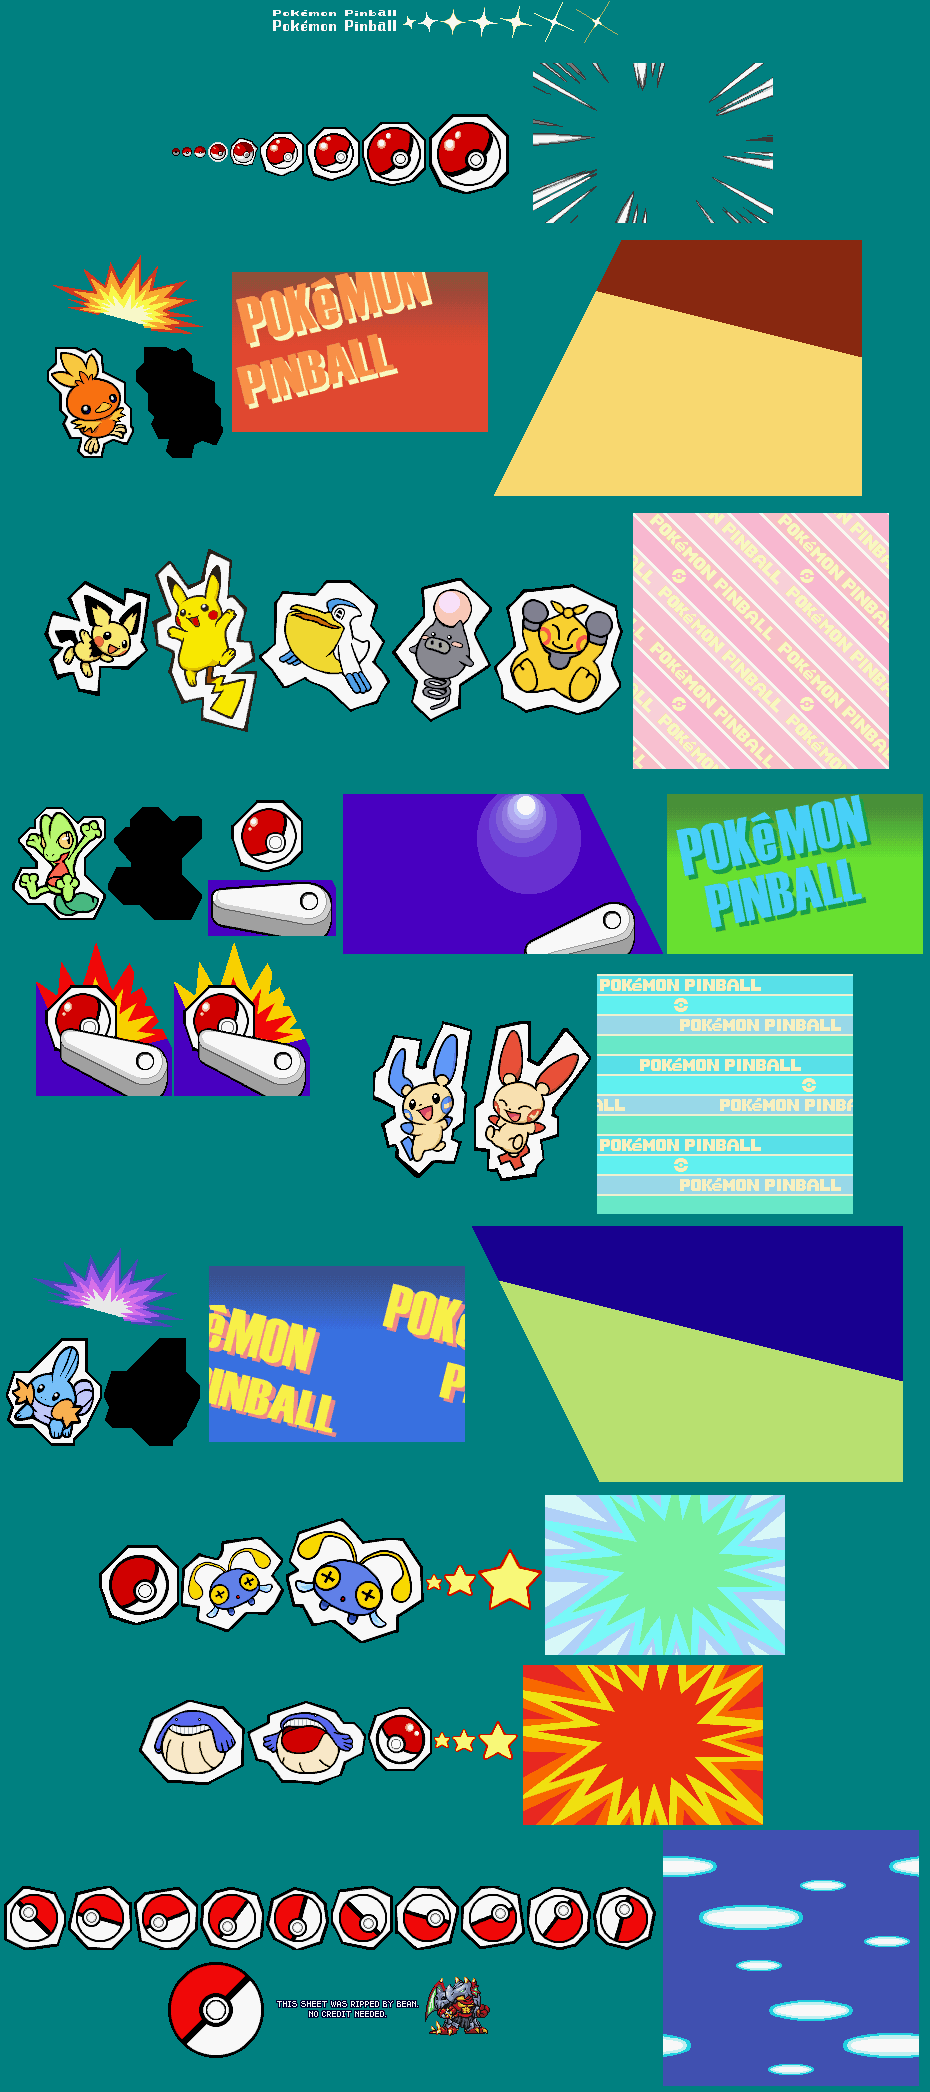 Pokémon Pinball: Ruby & Sapphire - Intro